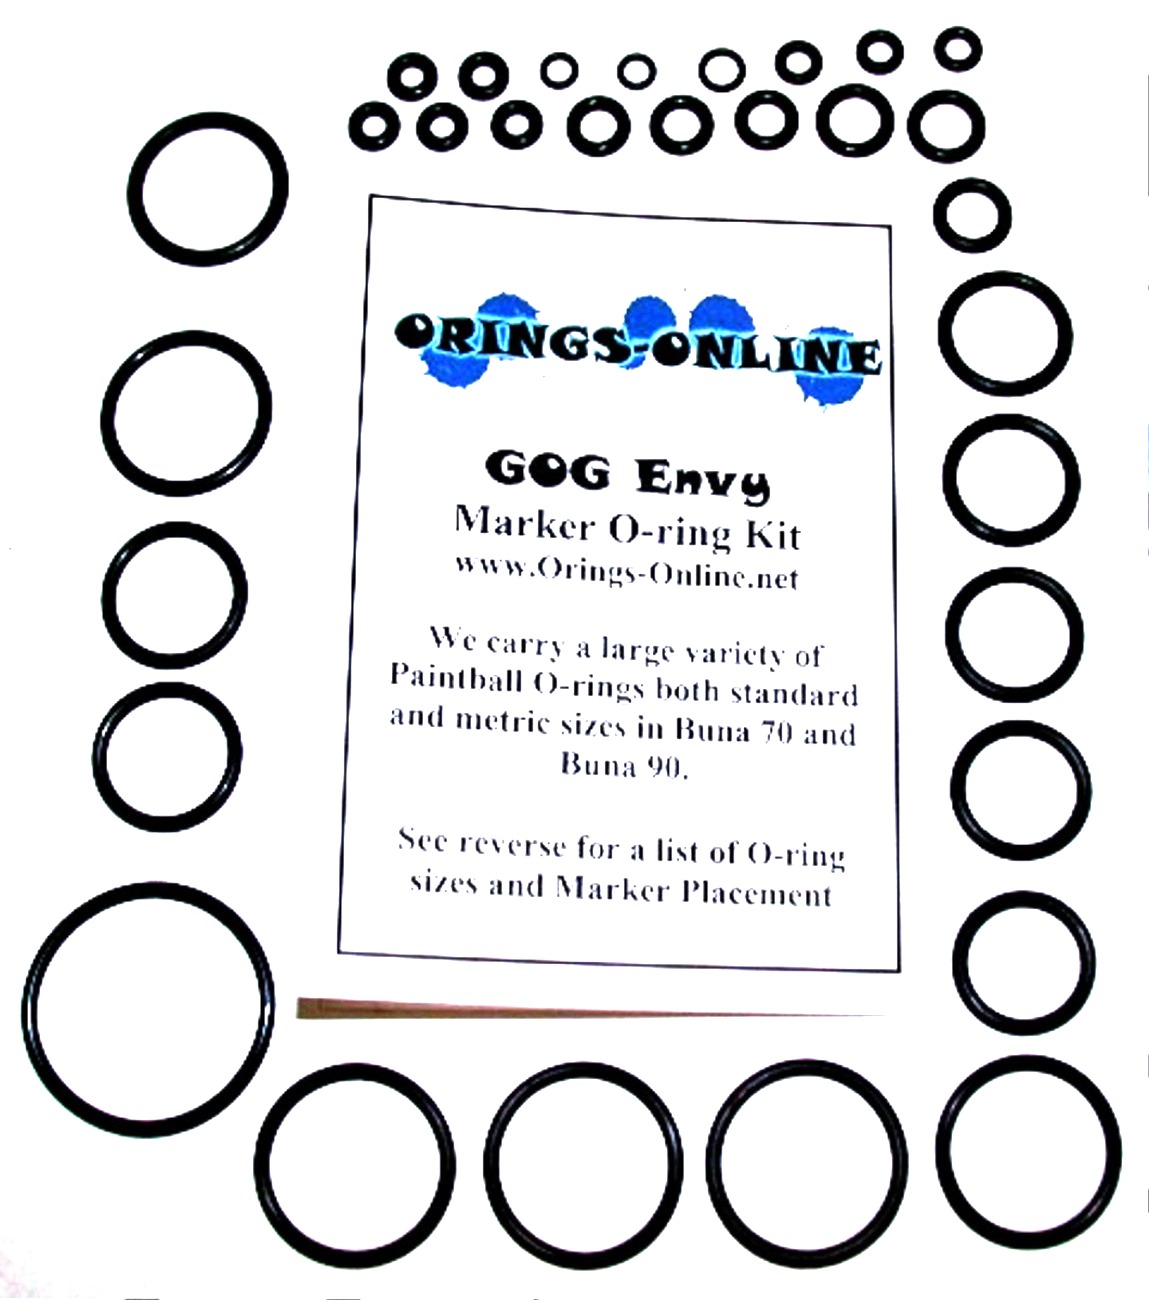 Gog Envy Marker O-ring Kit